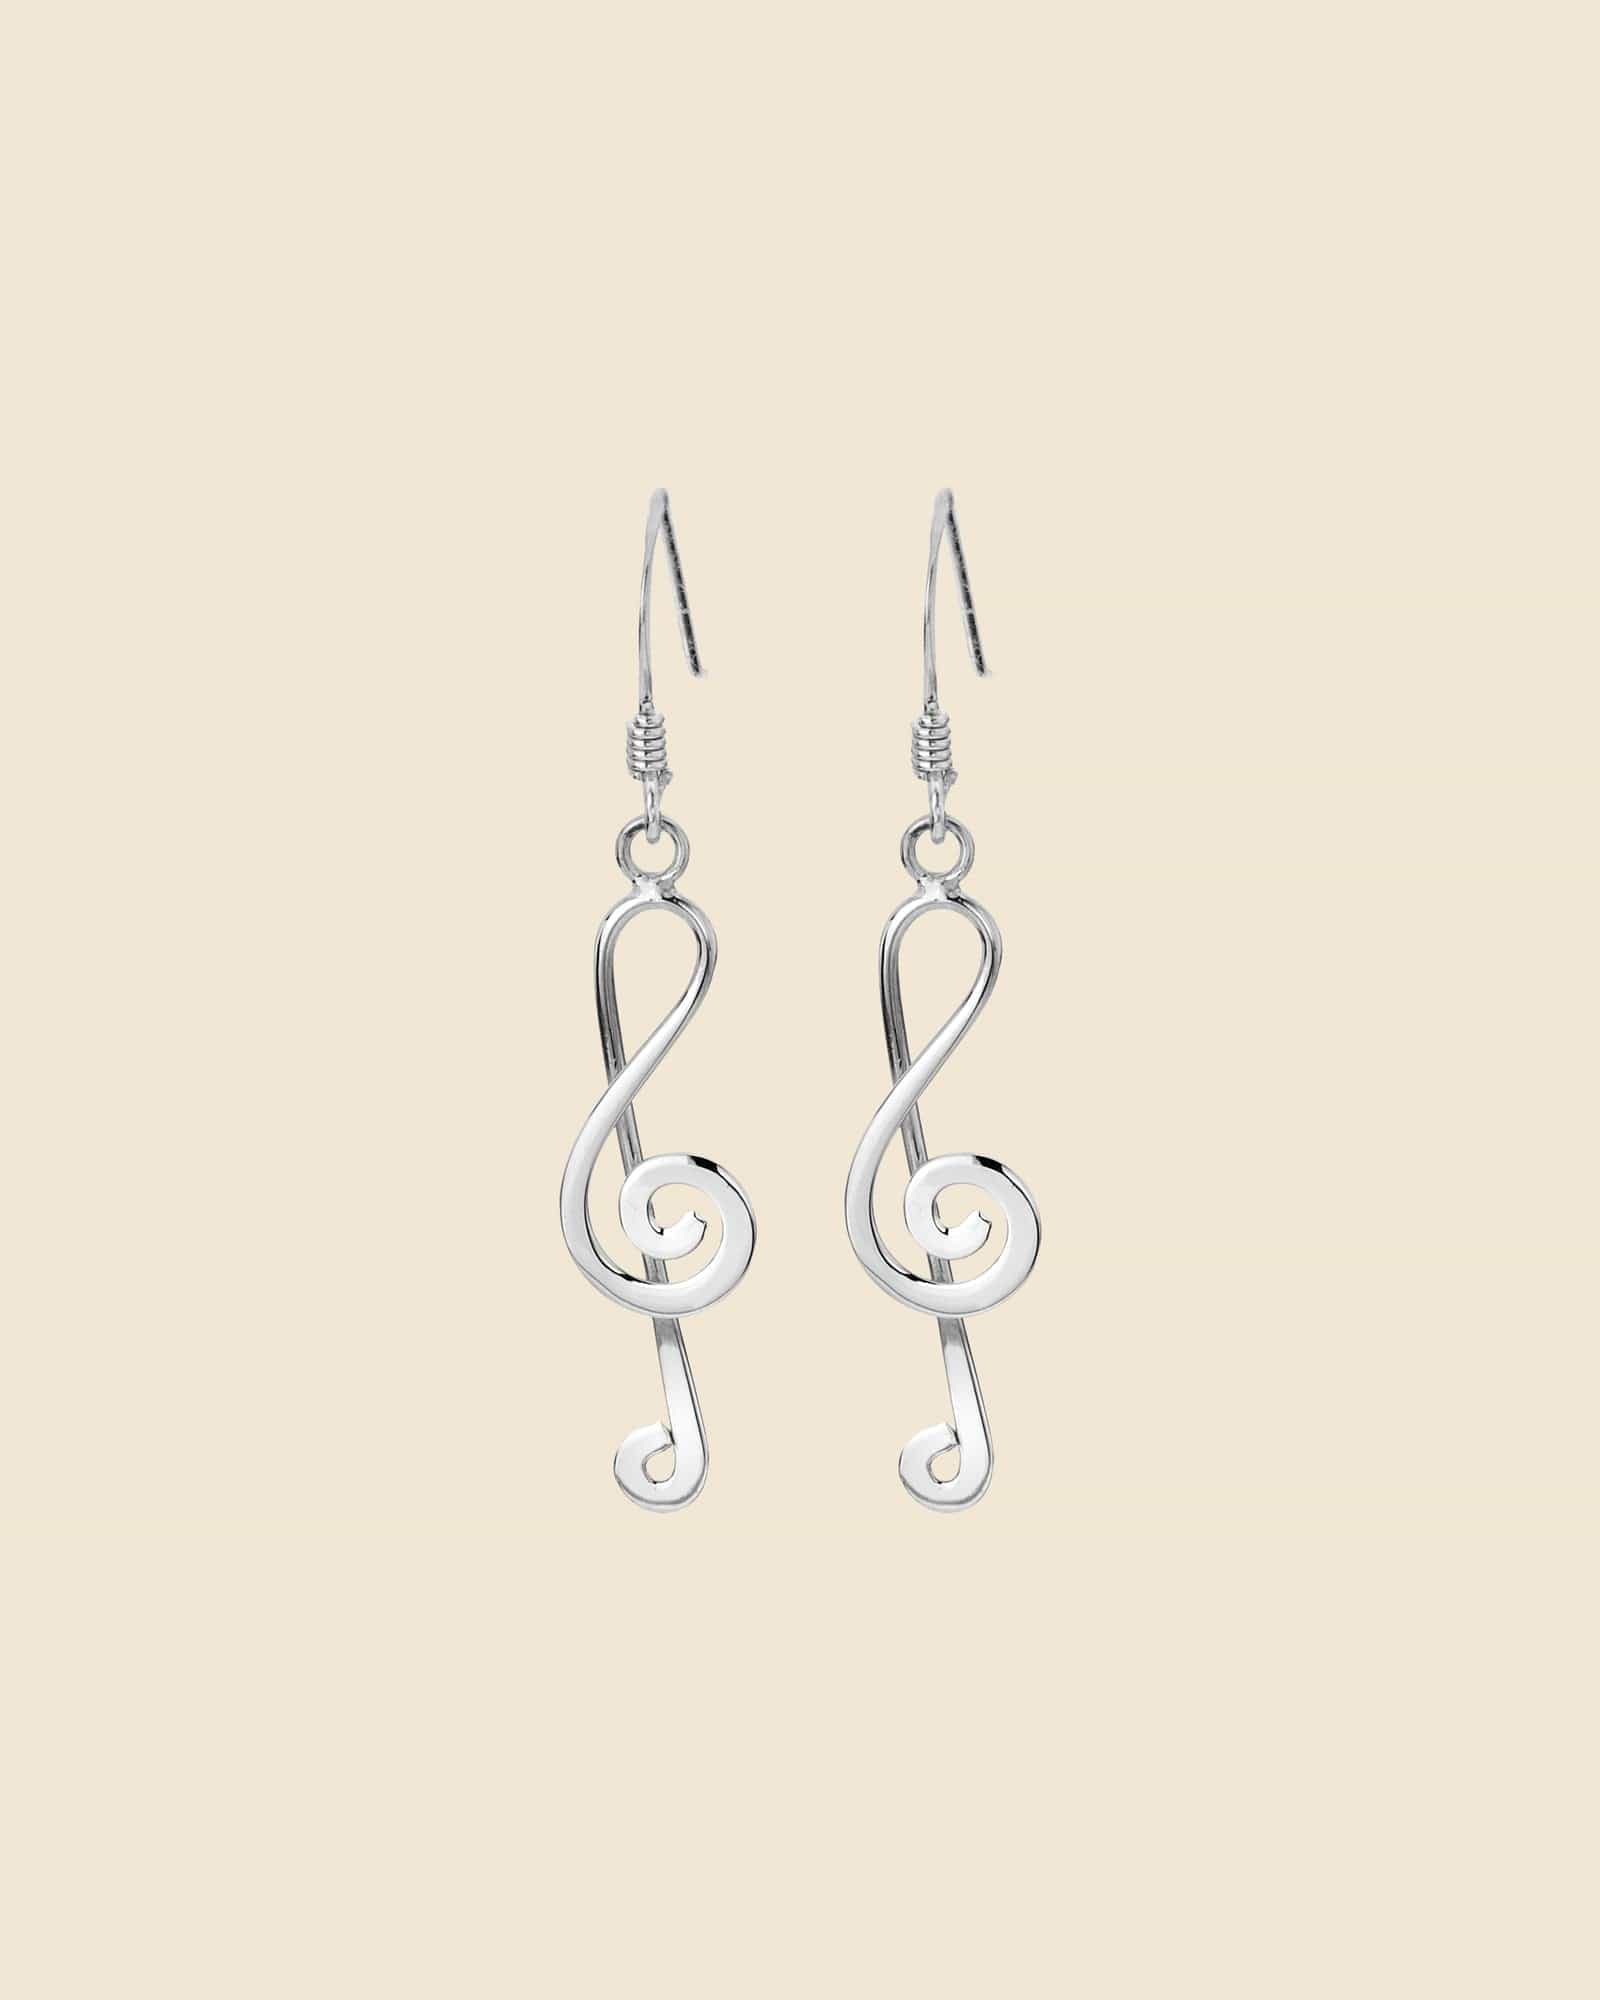 Sterling Silver Treble Clef Earrings